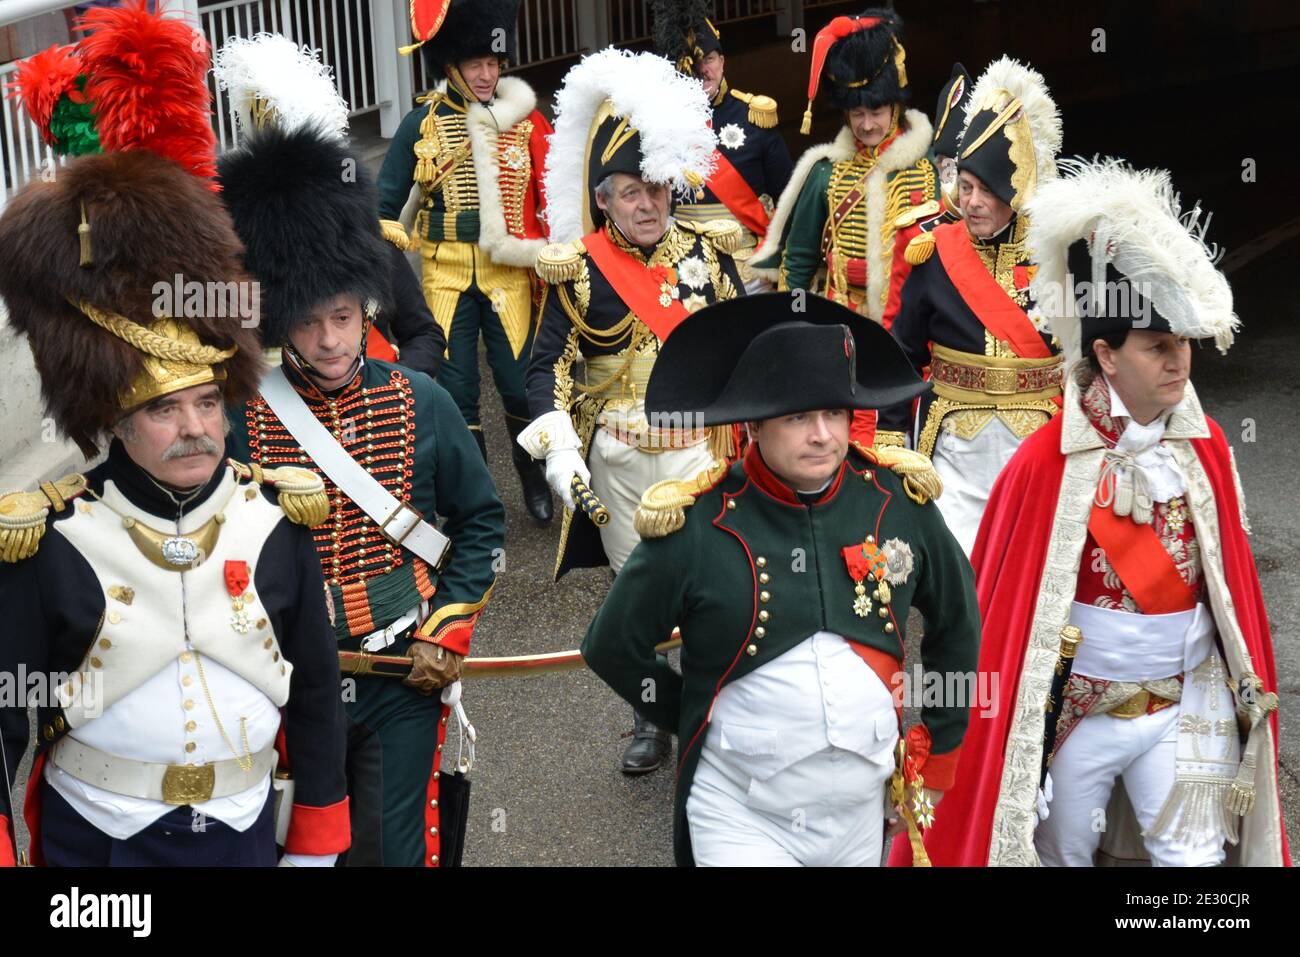 Frankreich, Golfe Juan, die Zeremonie der Napoléon Landung Wiederherstellung jedes Jahr im märz Napoléon Rückkehr von Elbe-Insel, um die Macht in Frankreich zurückzuerobern. Stockfoto